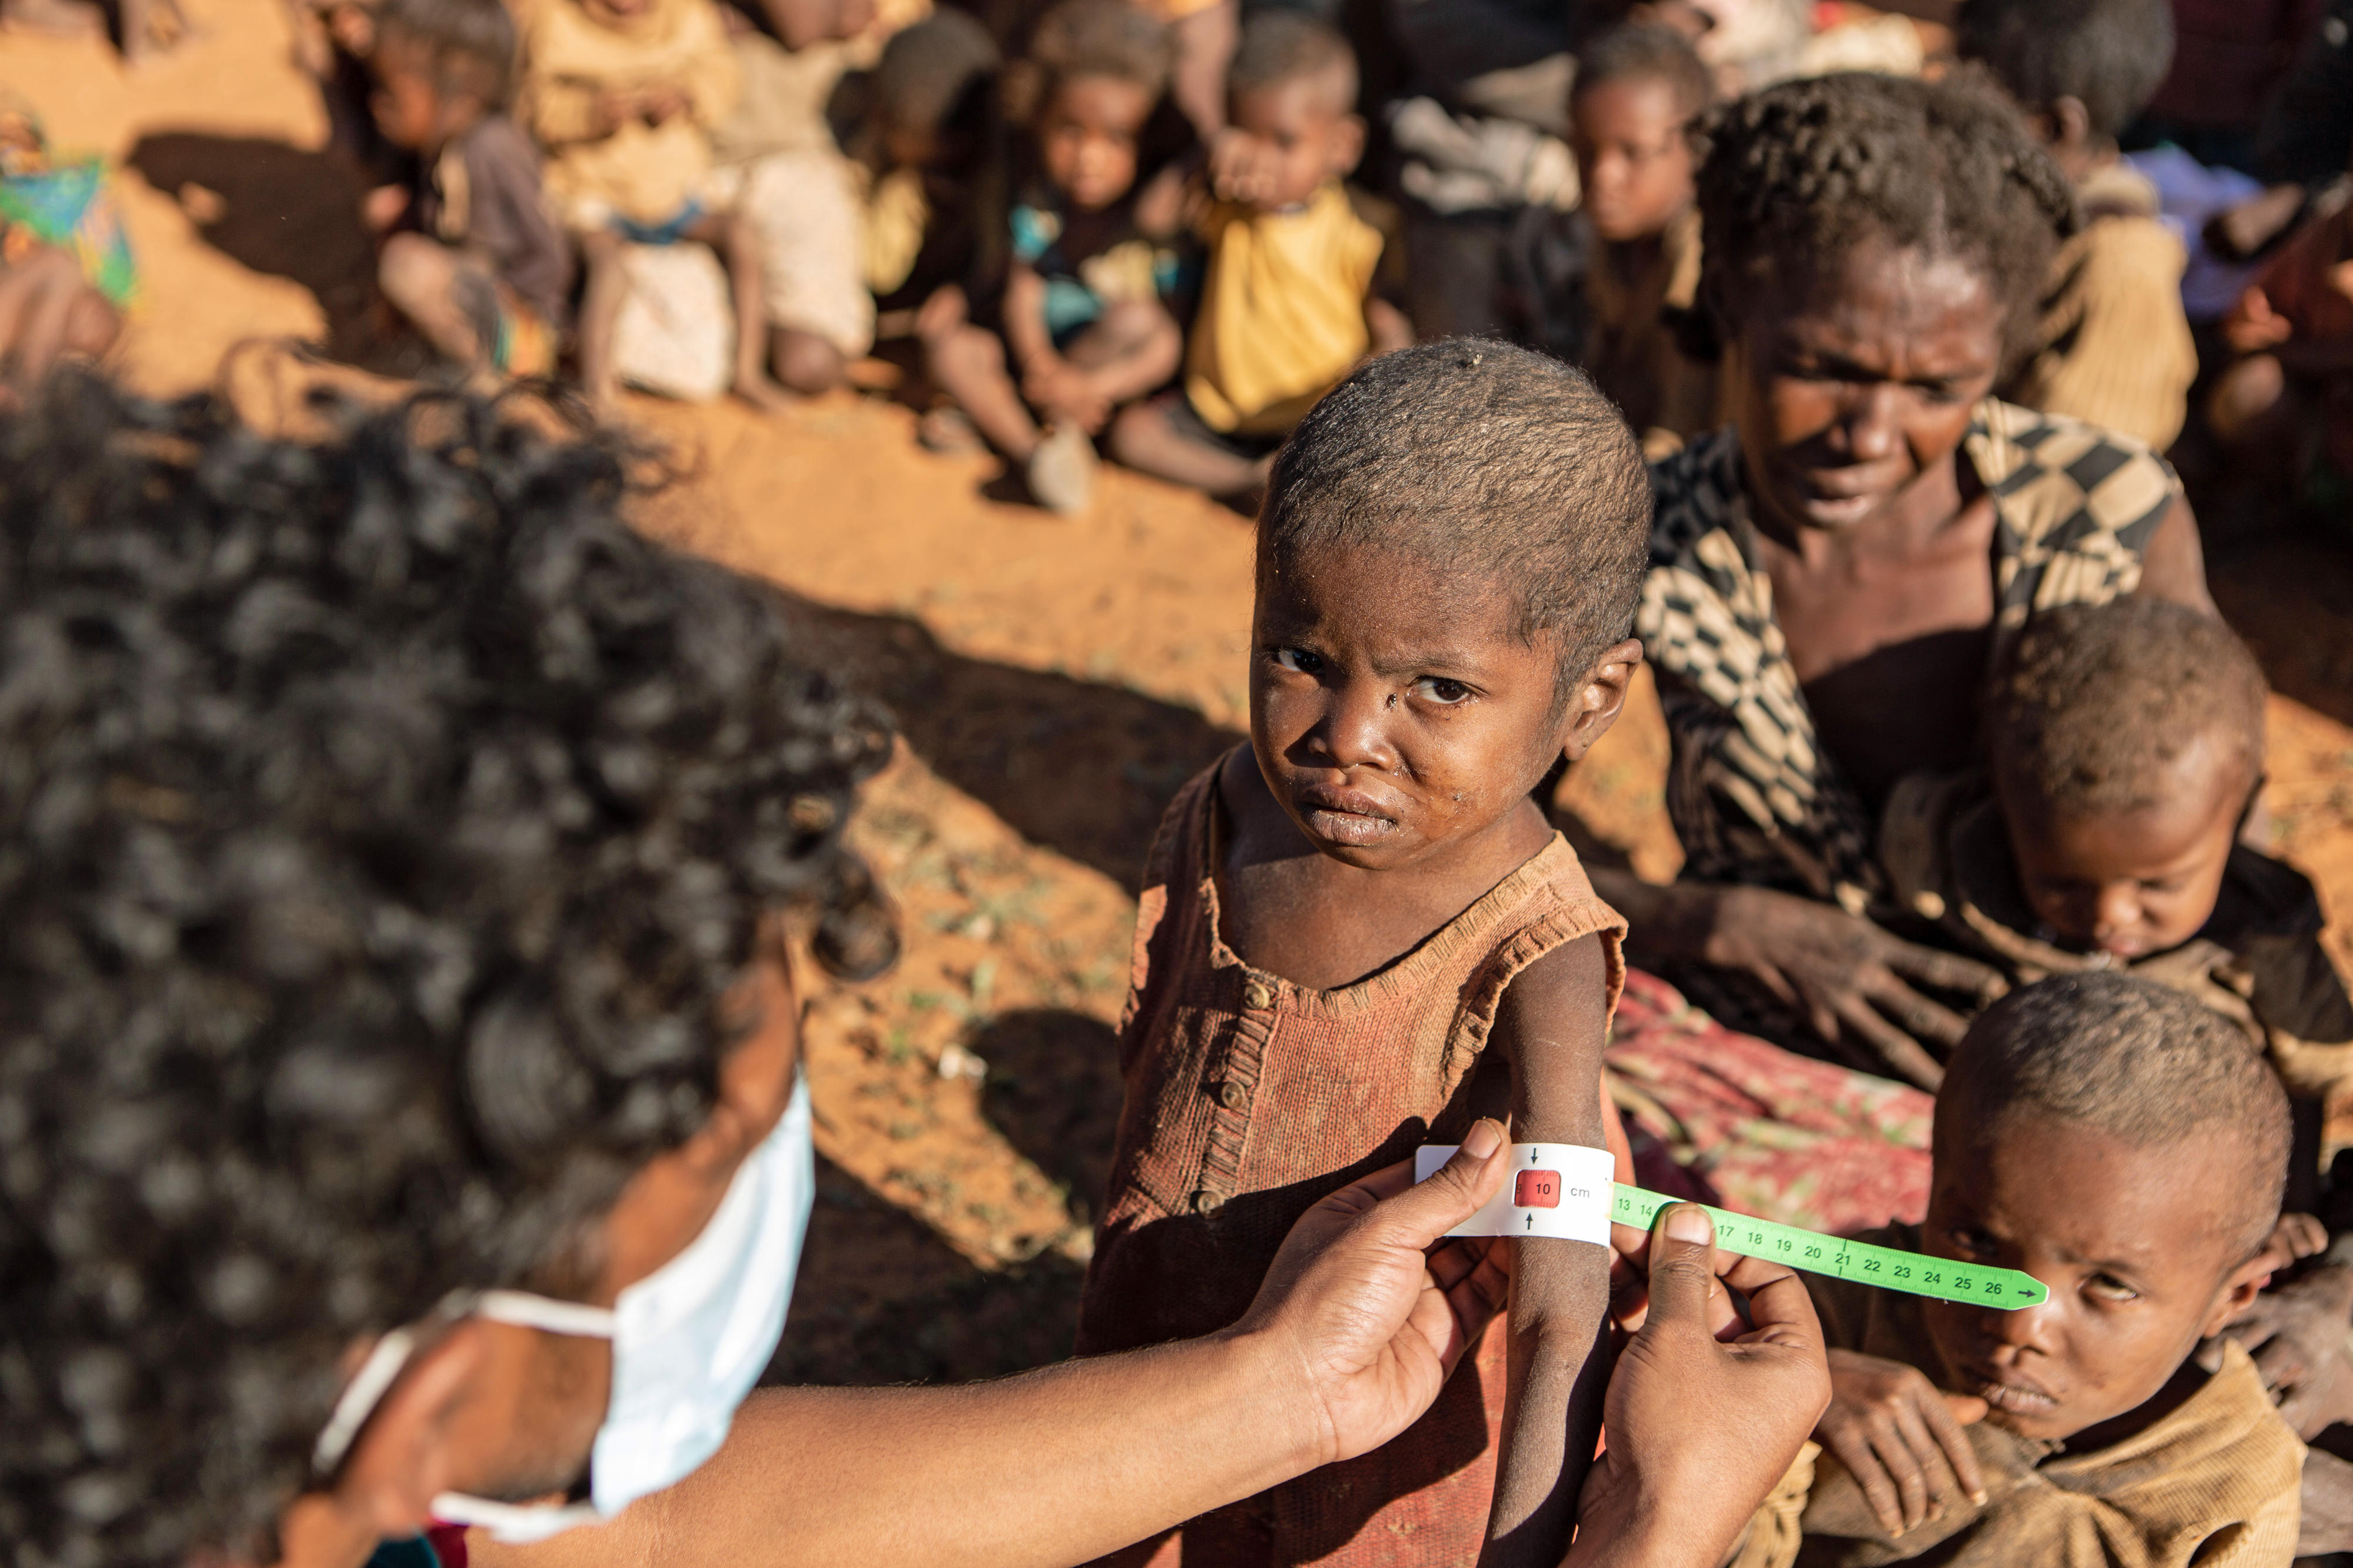 In Ambovombe, Madagaskar, bestimmt ein Mitarbeiter des Welternährungsprogramms mit einem speziellen Maßband den Grad der Mangelernährung des vierjährigen Retoboha.